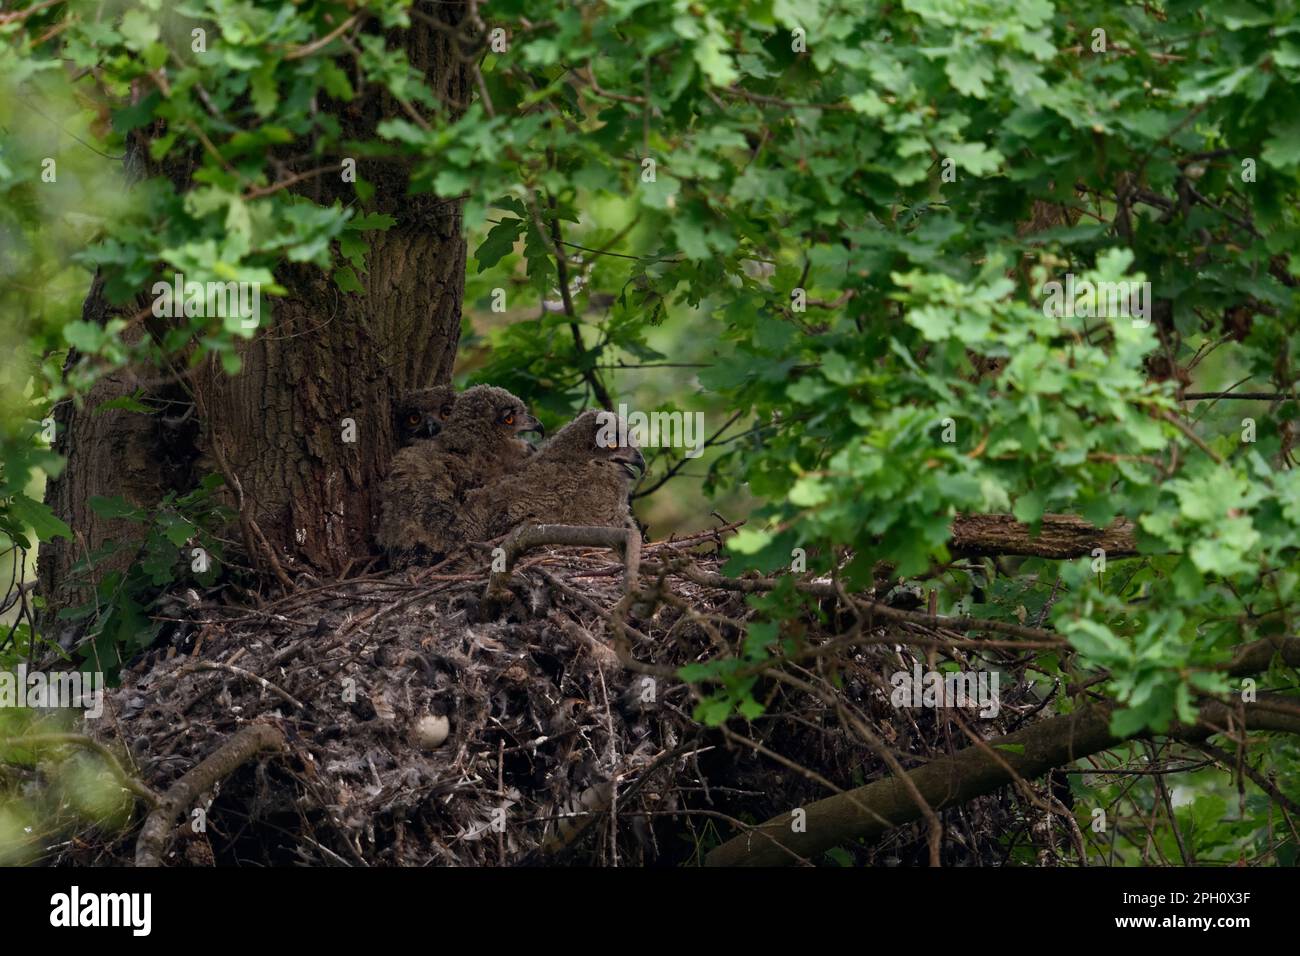 Ein aufmerksamer Blick... Europäische Adlereule ( Bubo Bubo ), Adlereule Nachwuchs, Nestlinge im Nest auf alten Goshawk-Augen. Stockfoto